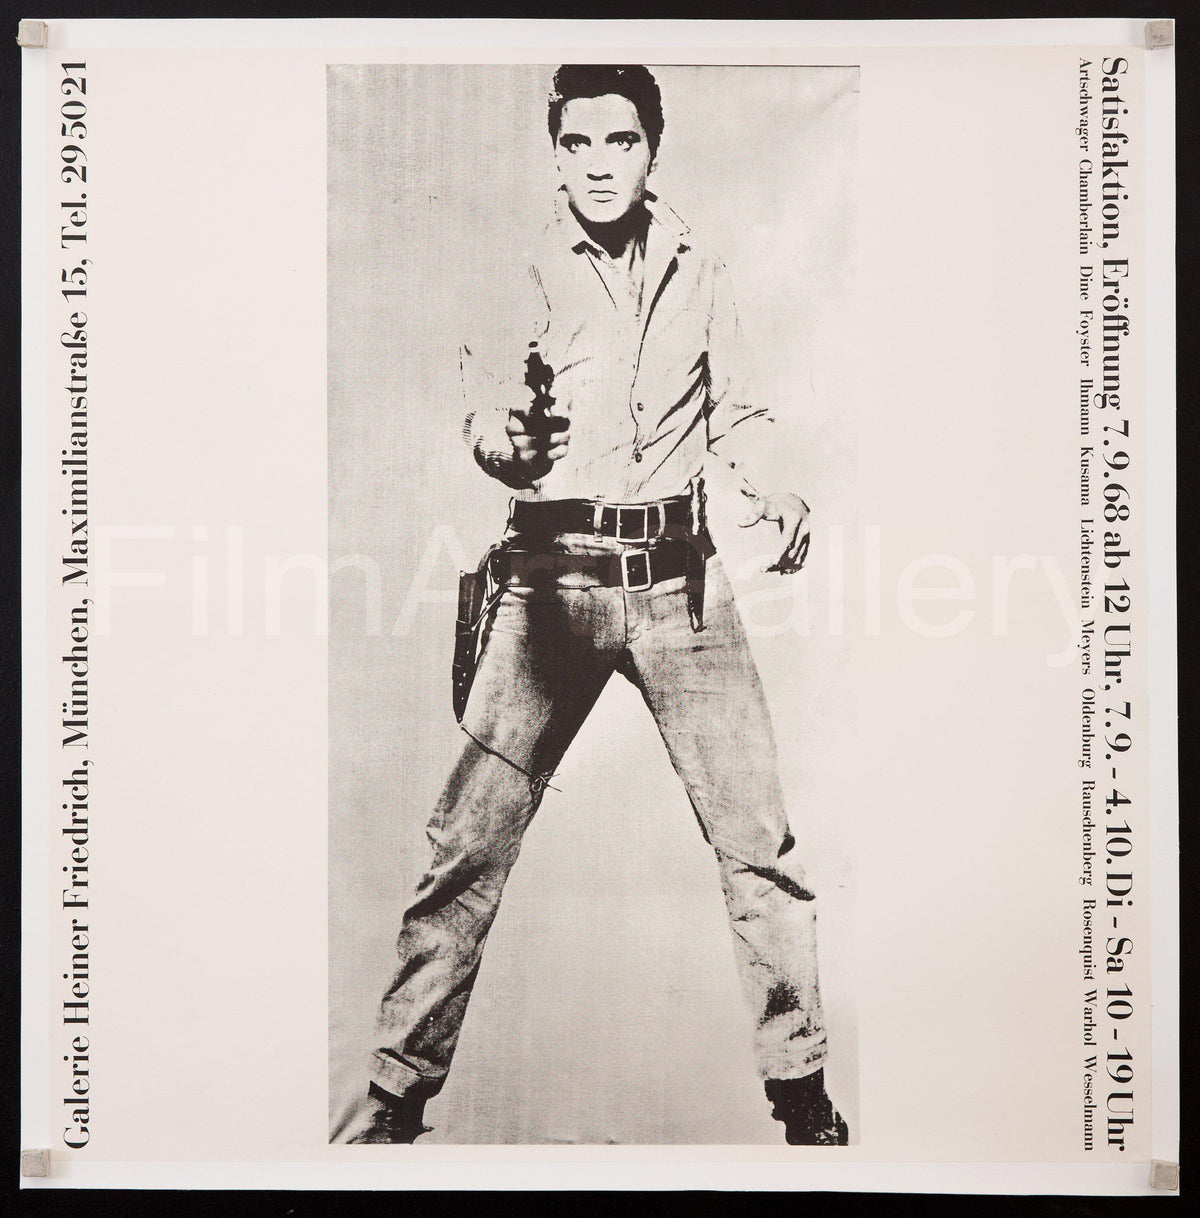 Satisfaktion art exhibit Munich (Andy Warhol&#39;s Elvis) 22x22 Original Vintage Movie Poster